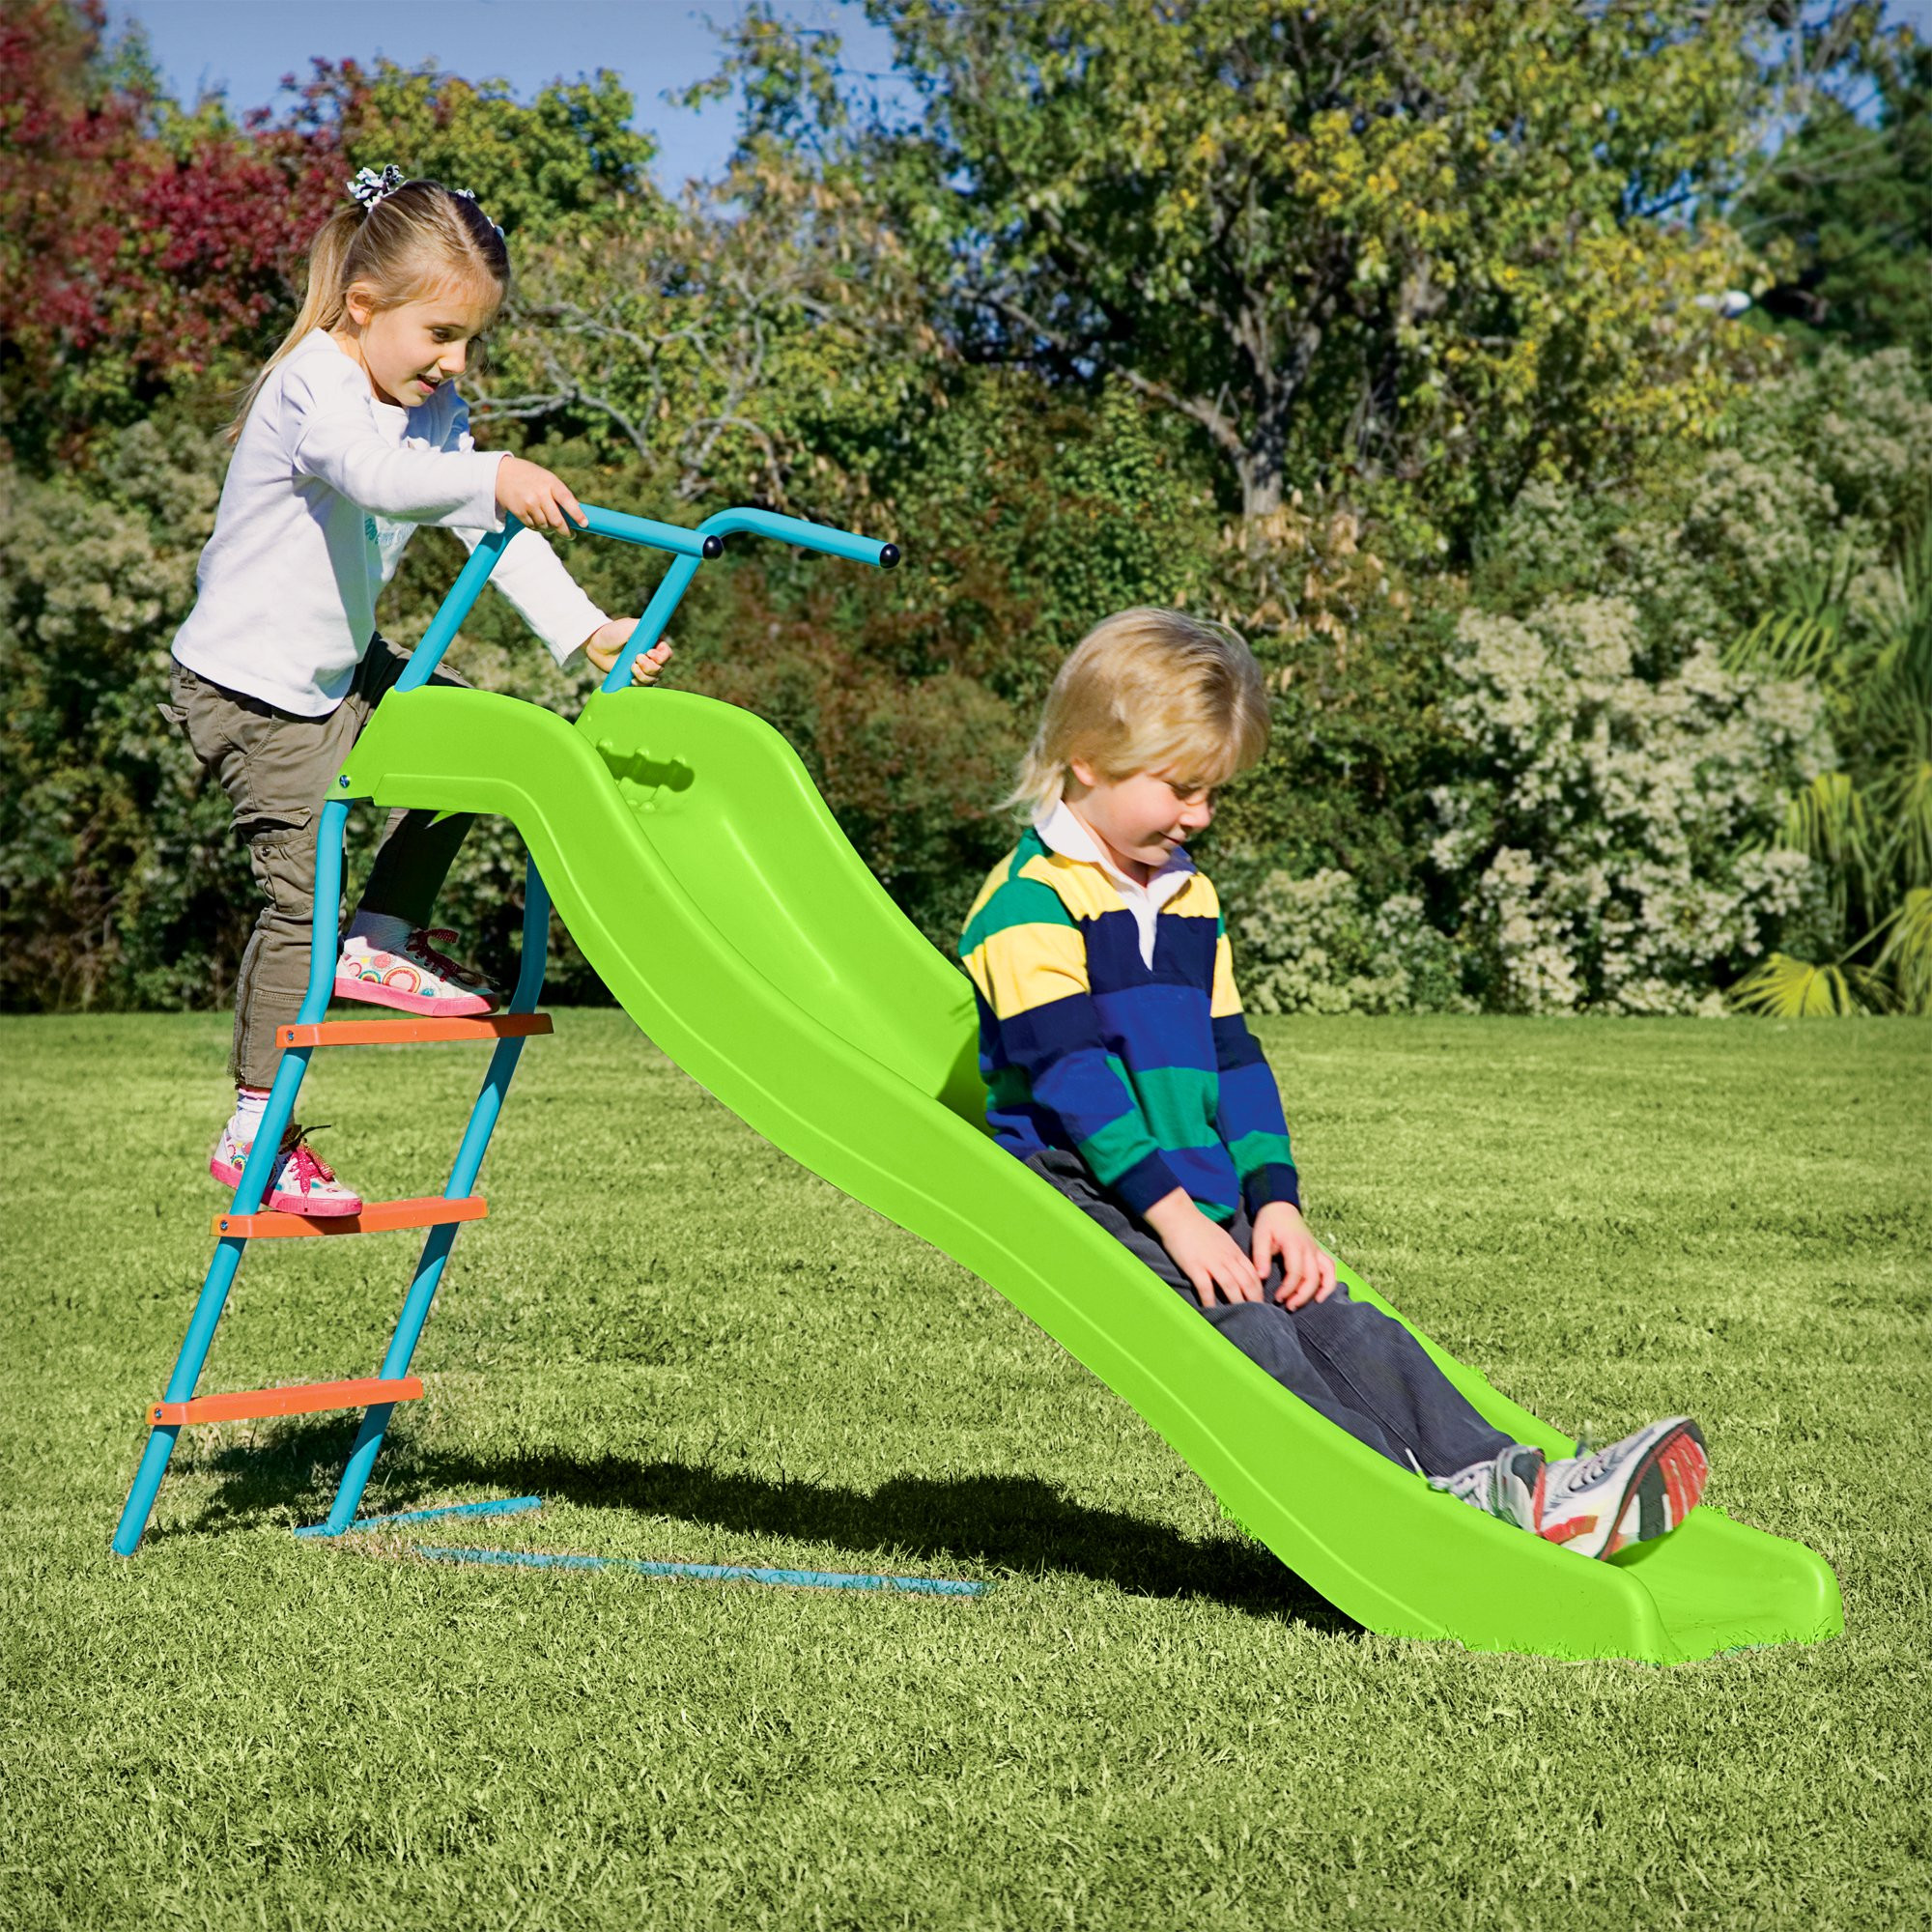 Indoor Slide For Kids
 Pure Fun 6 Foot Wavy Kids Slide Indoor or Outdoor